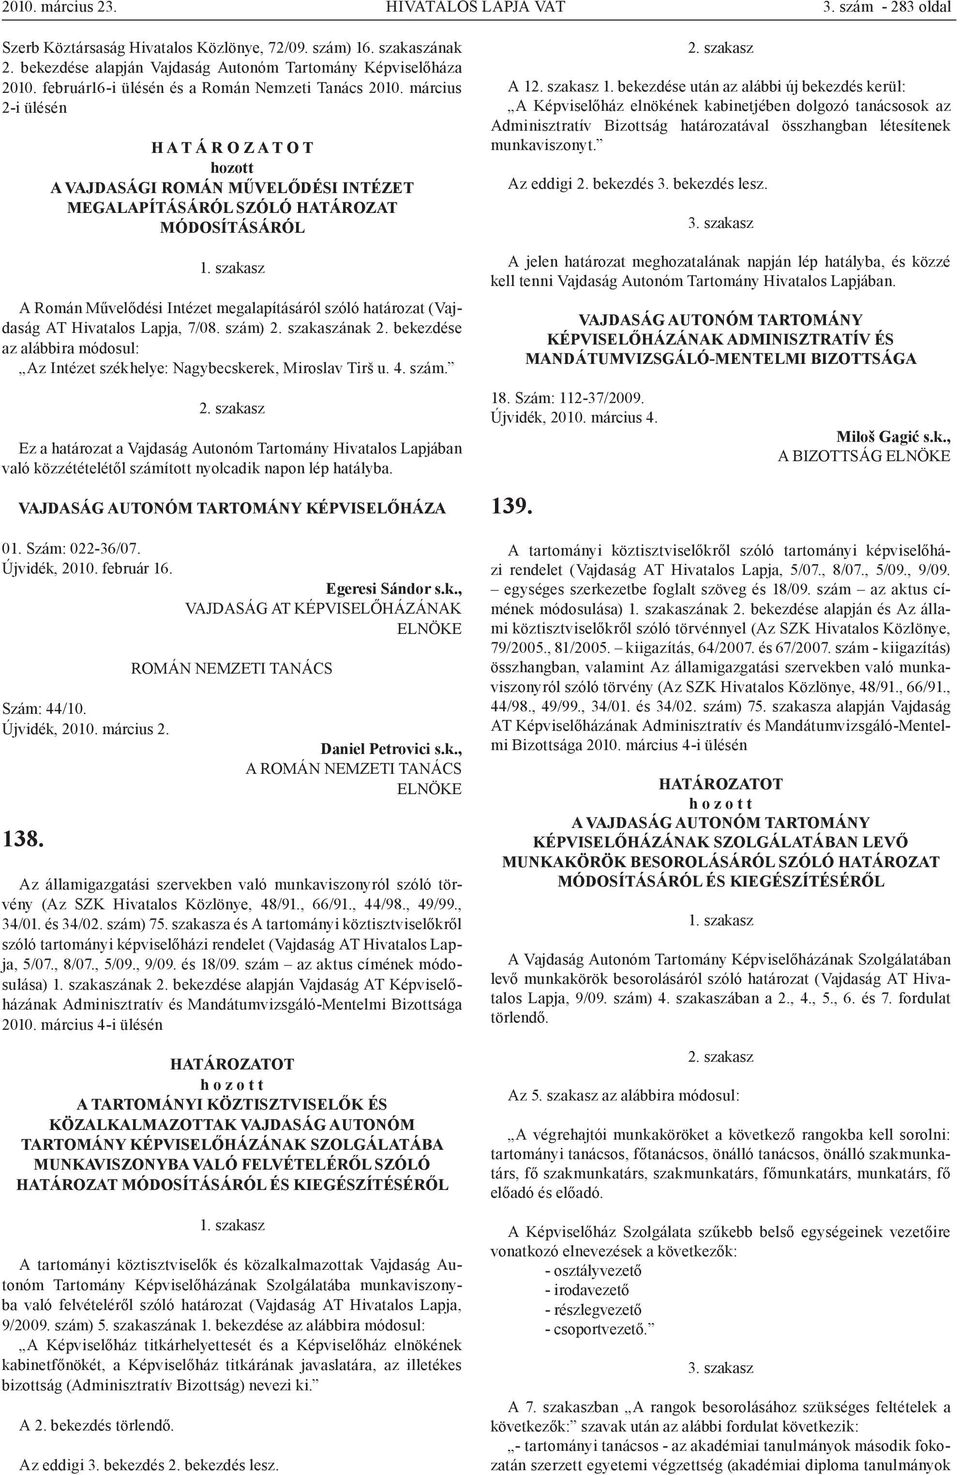 szakasz A Román Művelődési Intézet megalapításáról szóló határozat (Vajdaság AT Hivatalos Lapja, 7/08. szám) 2. szakaszának 2.